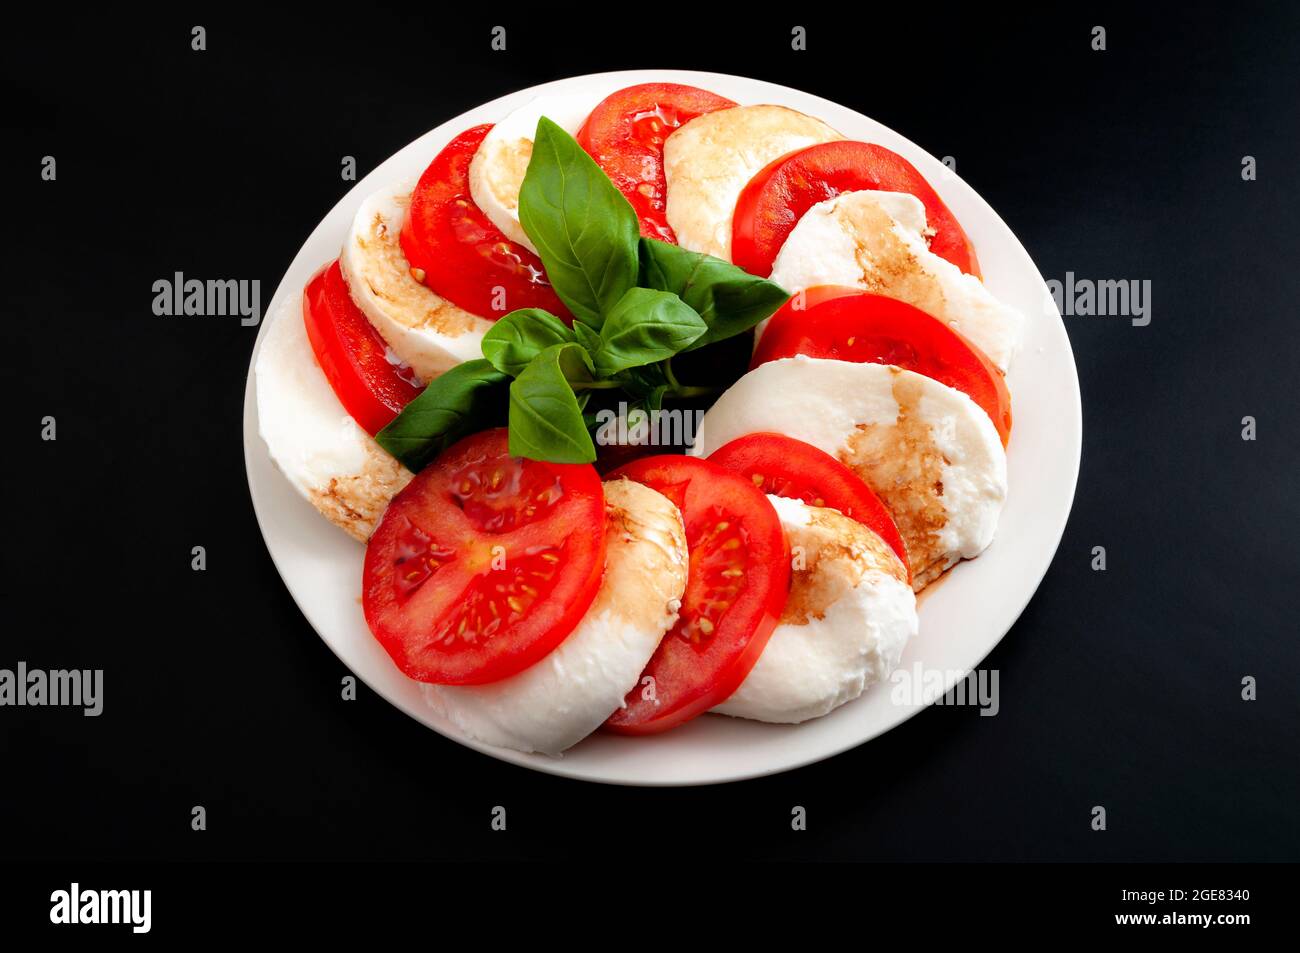 Mediterrane Küche, frische vegetarische Gerichte und italienisches kulinarisches Kunstkonzept mit Caprese-Salat aus Mozzarella-Käse, Tomaten und Basilikumbleafe i Stockfoto